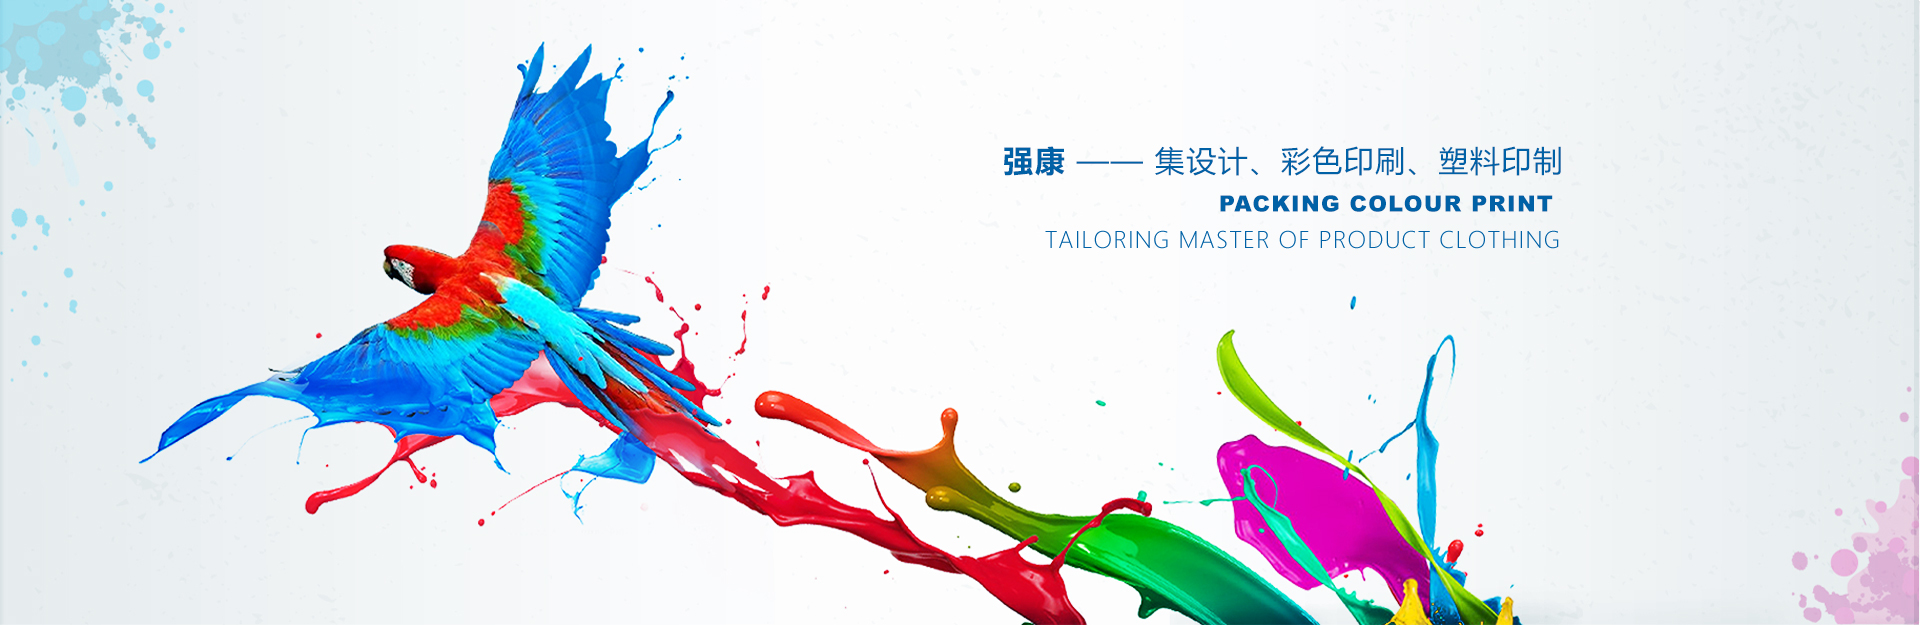 廣西南寧強康塑料彩印包裝有限公司是塑料袋廠家、復合袋廠家